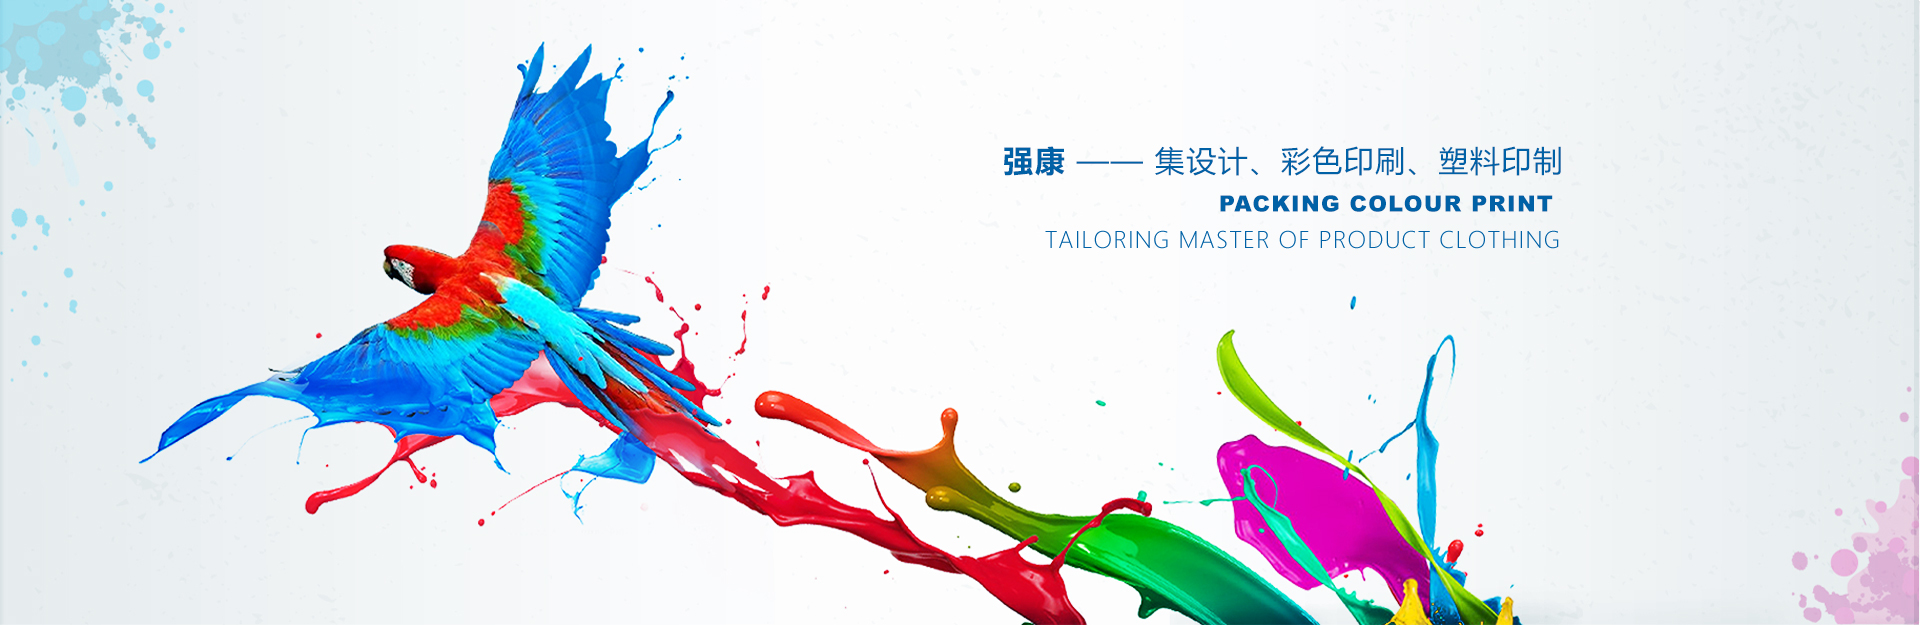 廣西南寧強康塑料彩印包裝有限公司是塑料袋廠家、復合袋廠家